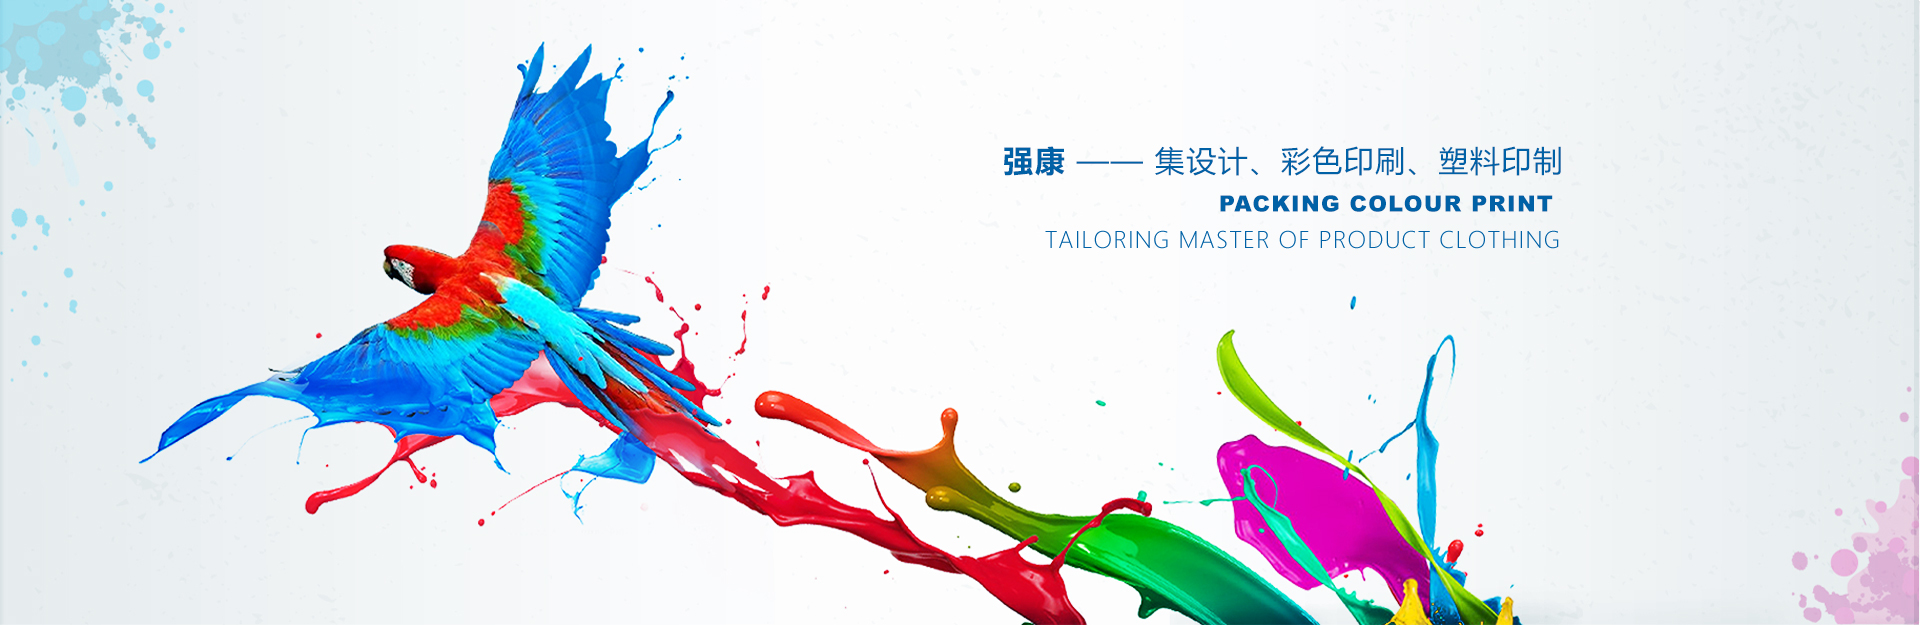 廣西南寧強康塑料彩印包裝有限公司是塑料袋廠家、復合袋廠家